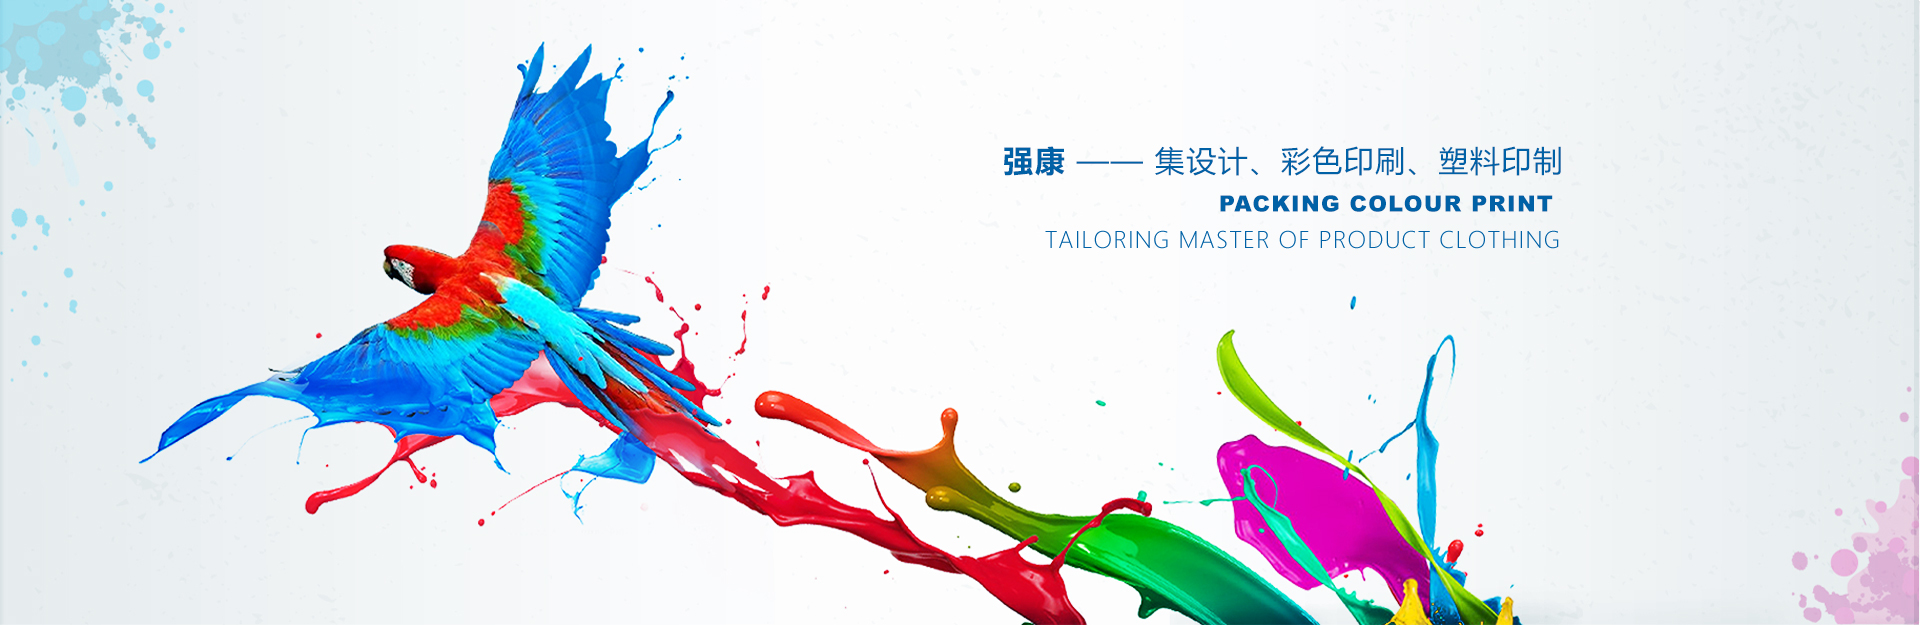 廣西南寧強康塑料彩印包裝有限公司是塑料袋廠家、復合袋廠家